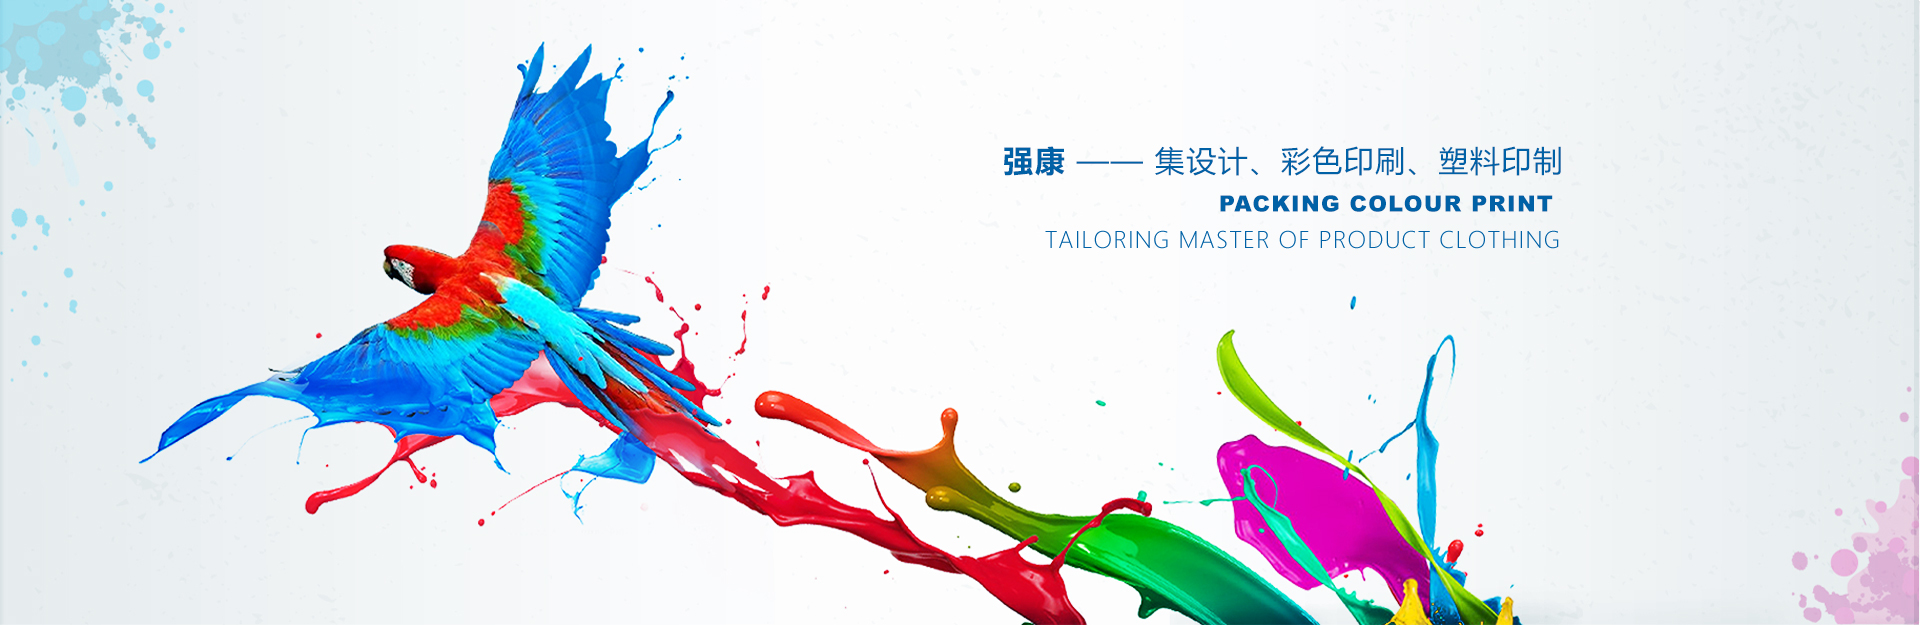 廣西南寧強康塑料彩印包裝有限公司是塑料袋廠家、復合袋廠家